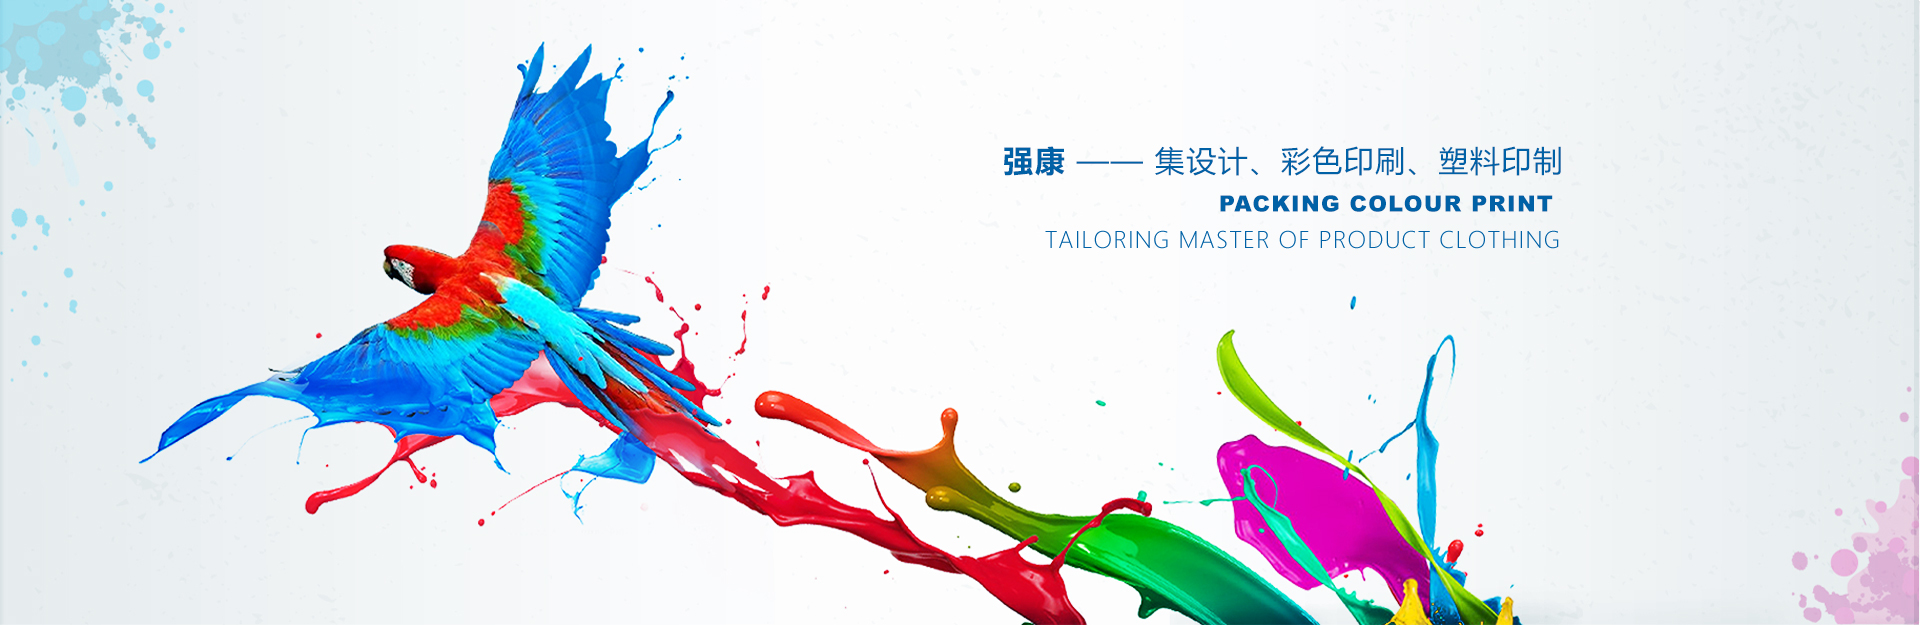 廣西南寧強康塑料彩印包裝有限公司是塑料袋廠家、復合袋廠家